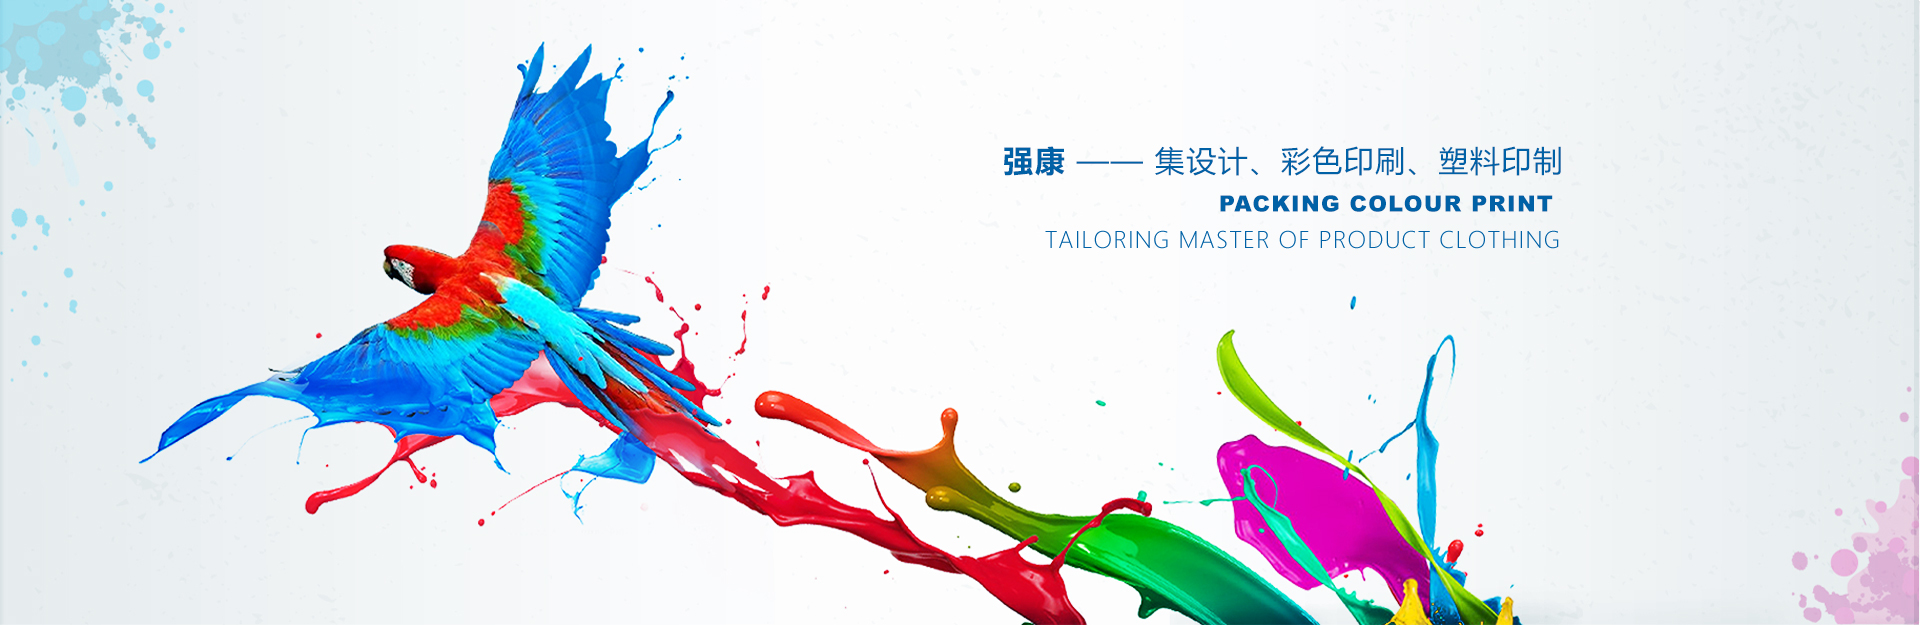 廣西南寧強康塑料彩印包裝有限公司是塑料袋廠家、復合袋廠家